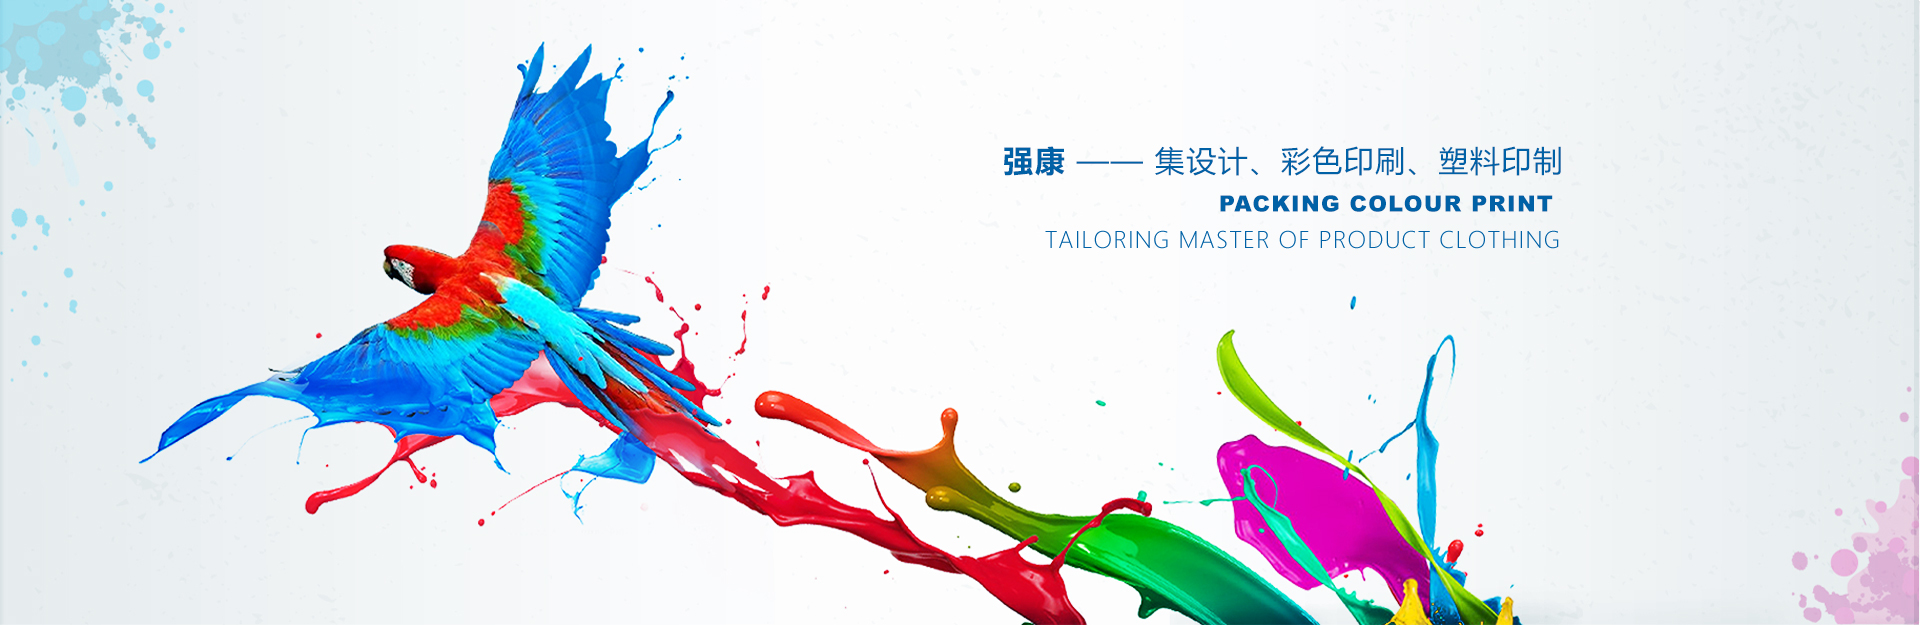 廣西南寧強康塑料彩印包裝有限公司是塑料袋廠家、復合袋廠家